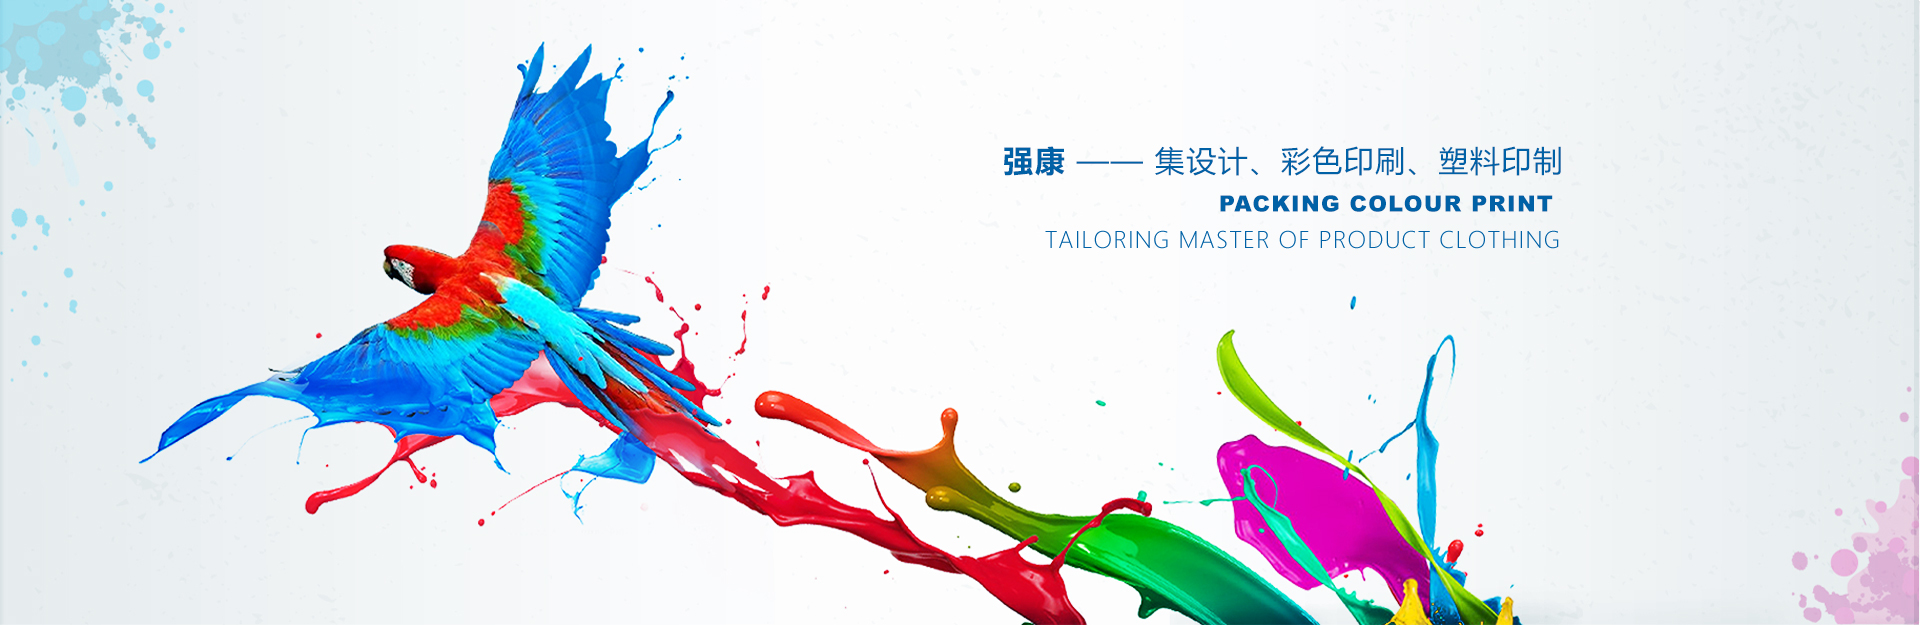 廣西南寧強康塑料彩印包裝有限公司是塑料袋廠家、復合袋廠家